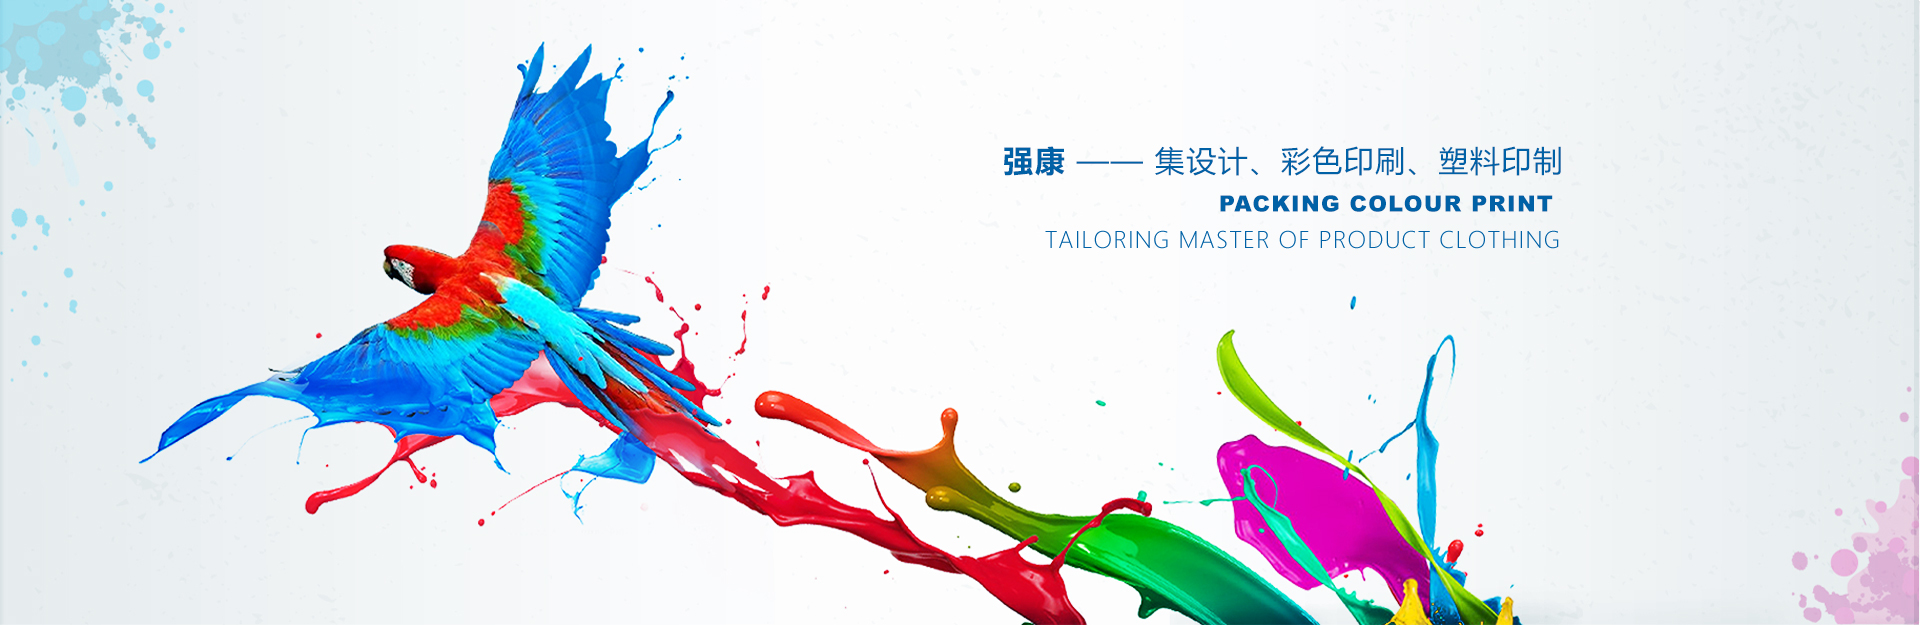 廣西南寧強康塑料彩印包裝有限公司是塑料袋廠家、復合袋廠家